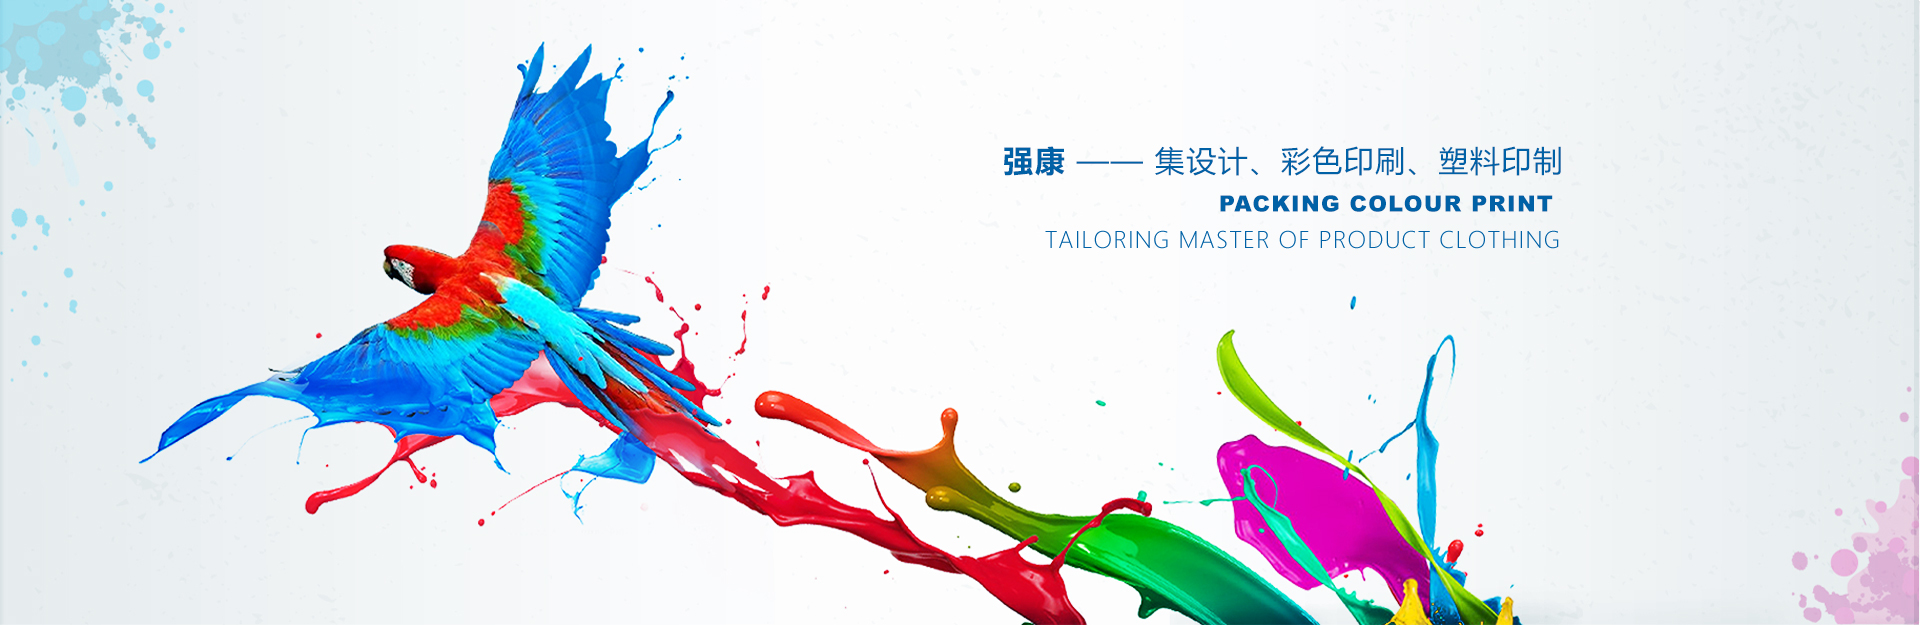 廣西南寧強康塑料彩印包裝有限公司是塑料袋廠家、復合袋廠家